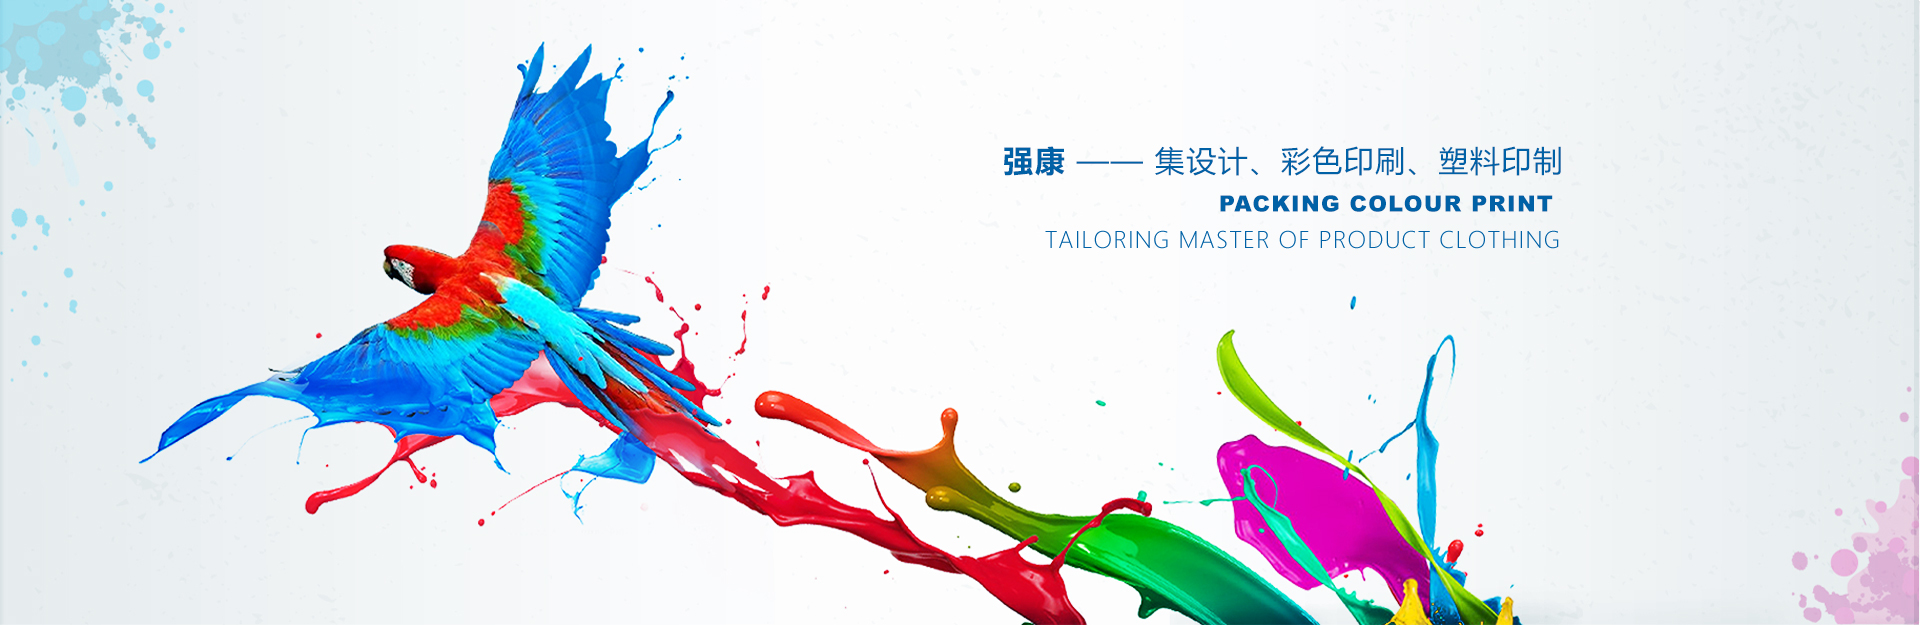 廣西南寧強康塑料彩印包裝有限公司是塑料袋廠家、復合袋廠家